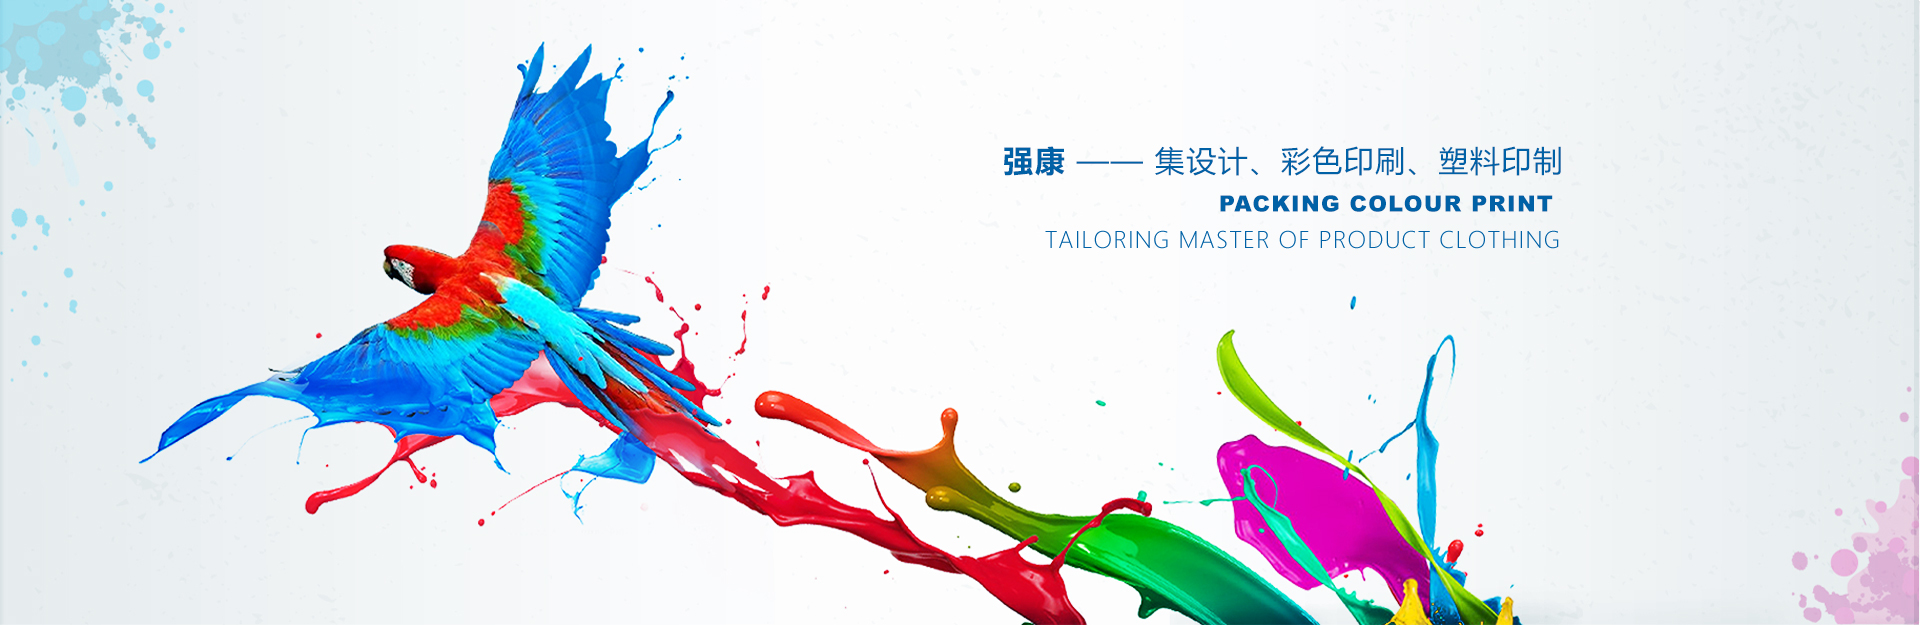 廣西南寧強康塑料彩印包裝有限公司是塑料袋廠家、復合袋廠家